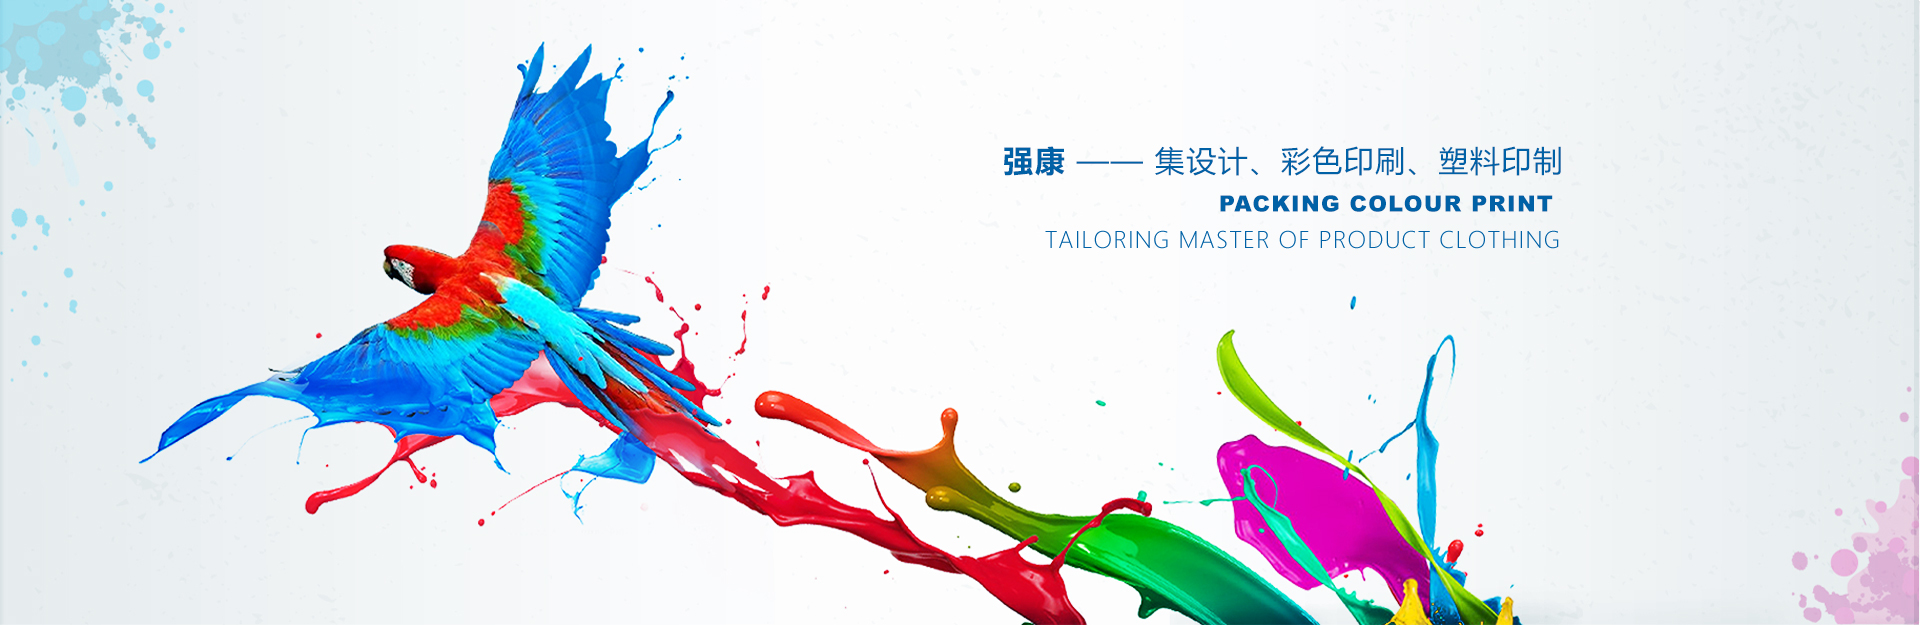 廣西南寧強康塑料彩印包裝有限公司是塑料袋廠家、復合袋廠家